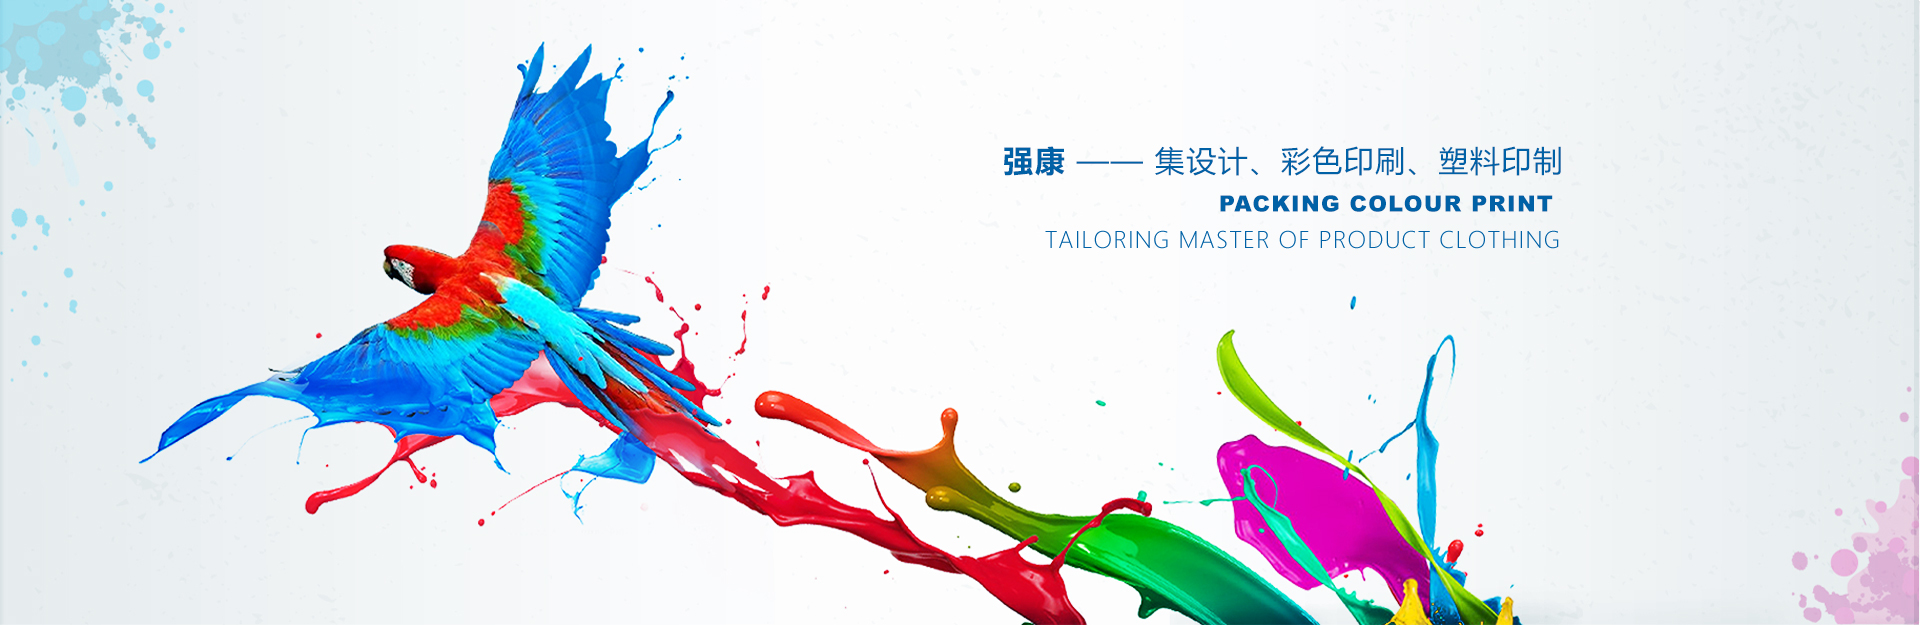 廣西南寧強康塑料彩印包裝有限公司是塑料袋廠家、復合袋廠家